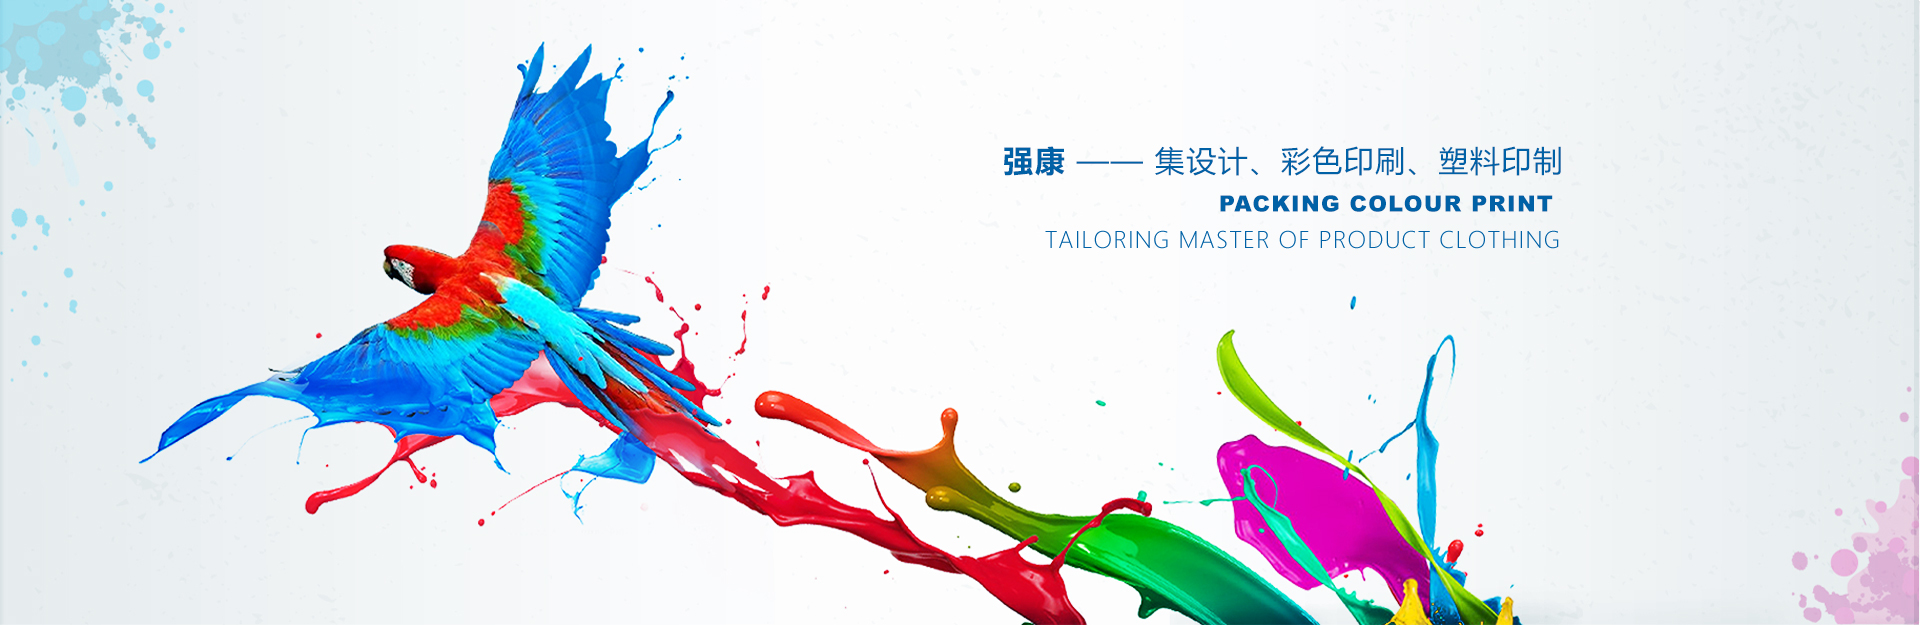 廣西南寧強康塑料彩印包裝有限公司是塑料袋廠家、復合袋廠家